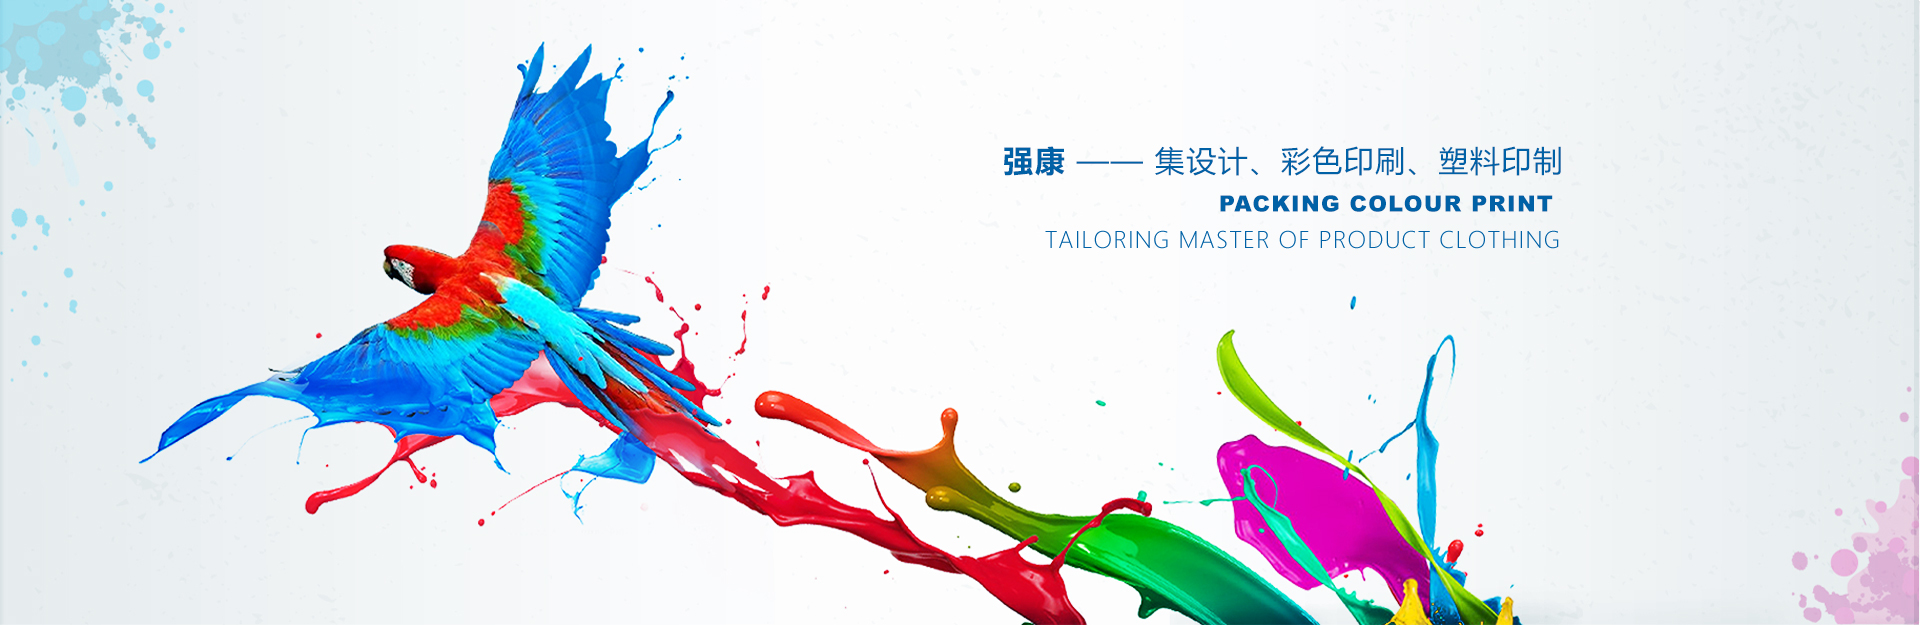 廣西南寧強康塑料彩印包裝有限公司是塑料袋廠家、復合袋廠家